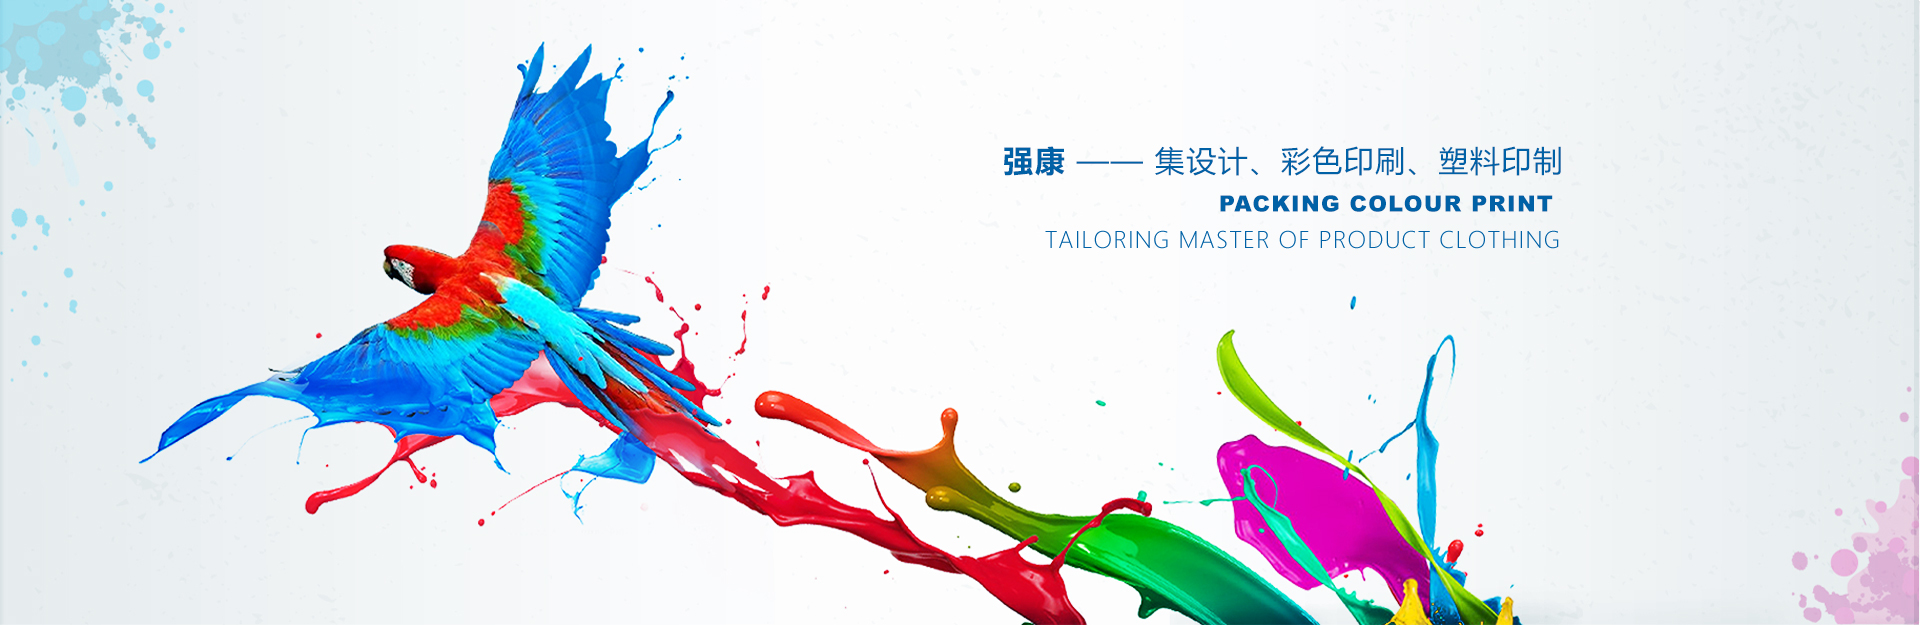 廣西南寧強康塑料彩印包裝有限公司是塑料袋廠家、復合袋廠家